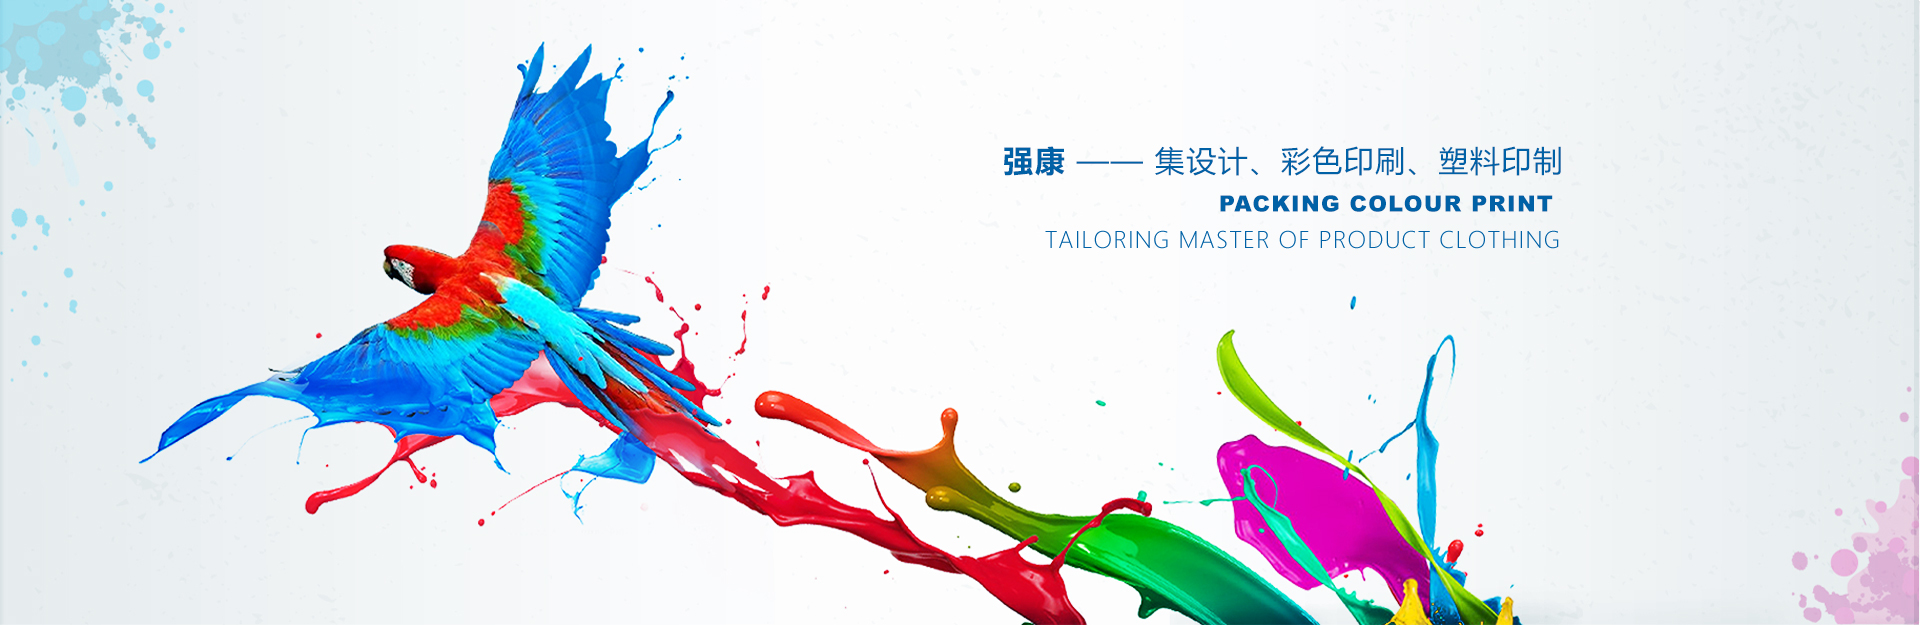 廣西南寧強康塑料彩印包裝有限公司是塑料袋廠家、復合袋廠家